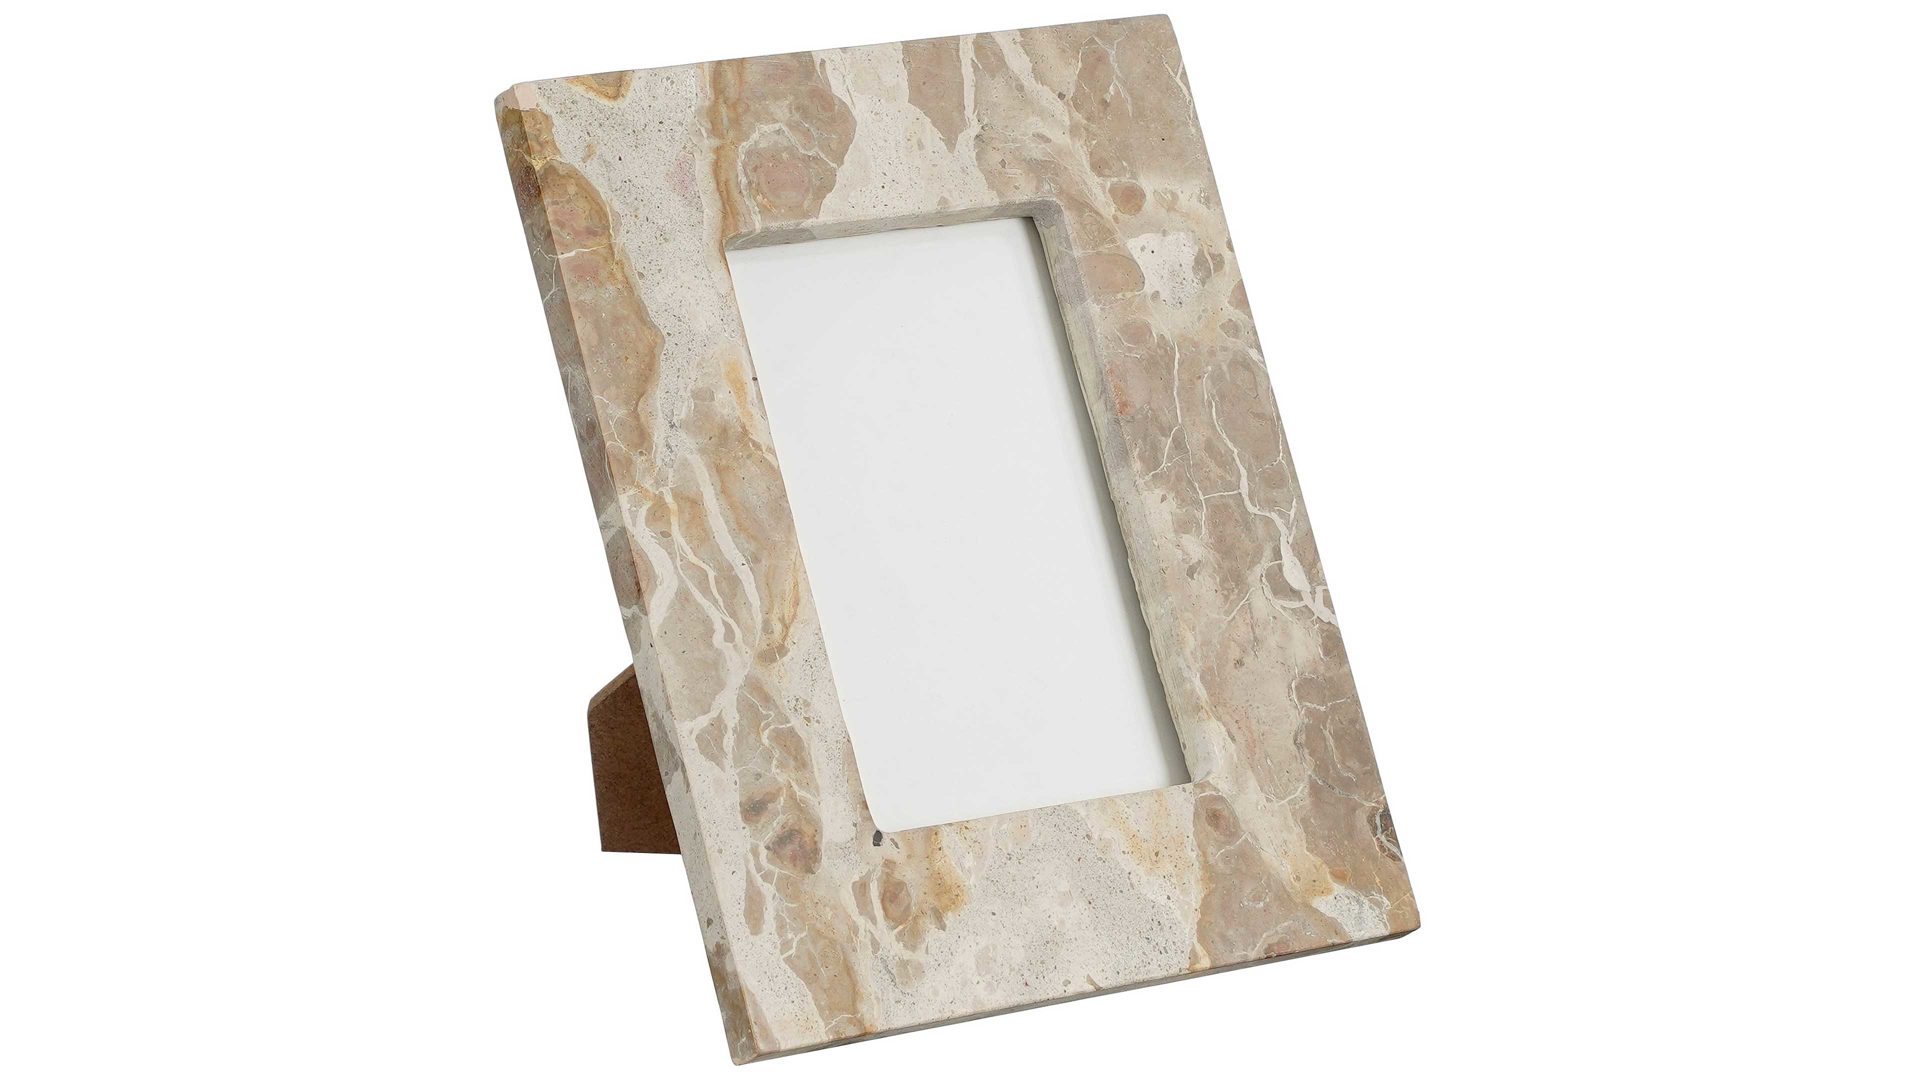 Bilderrahmen Edelman® aus Stein in Beige Tisch-Bilderrahmen Edgar beige marmorierter Marmor - ca. 18 x 23 cm